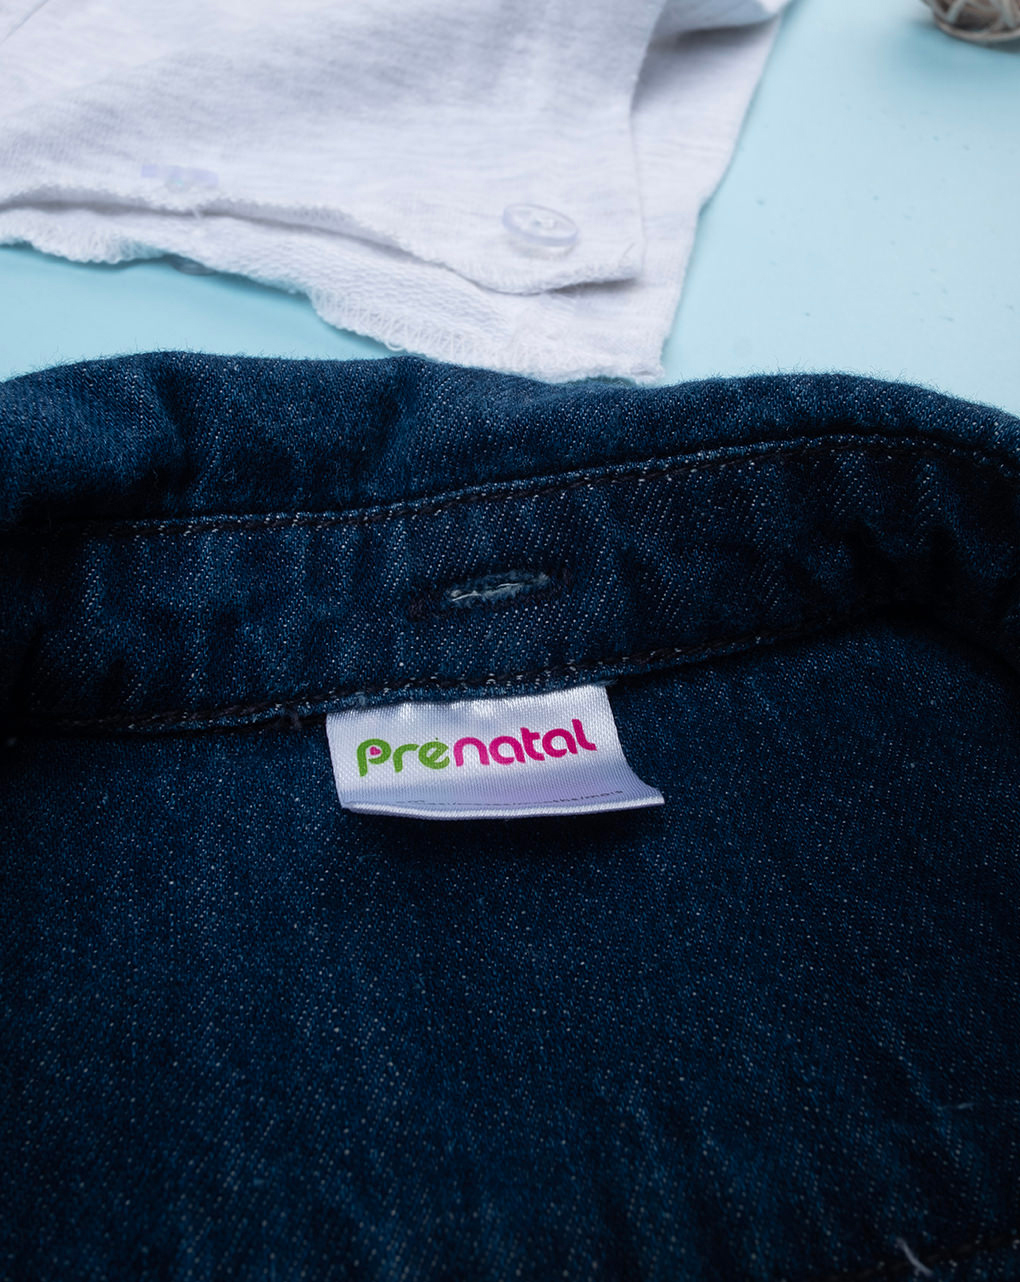 βρεφικό τζιν πουκάμισο με κουκούλα για αγόρι - Prénatal